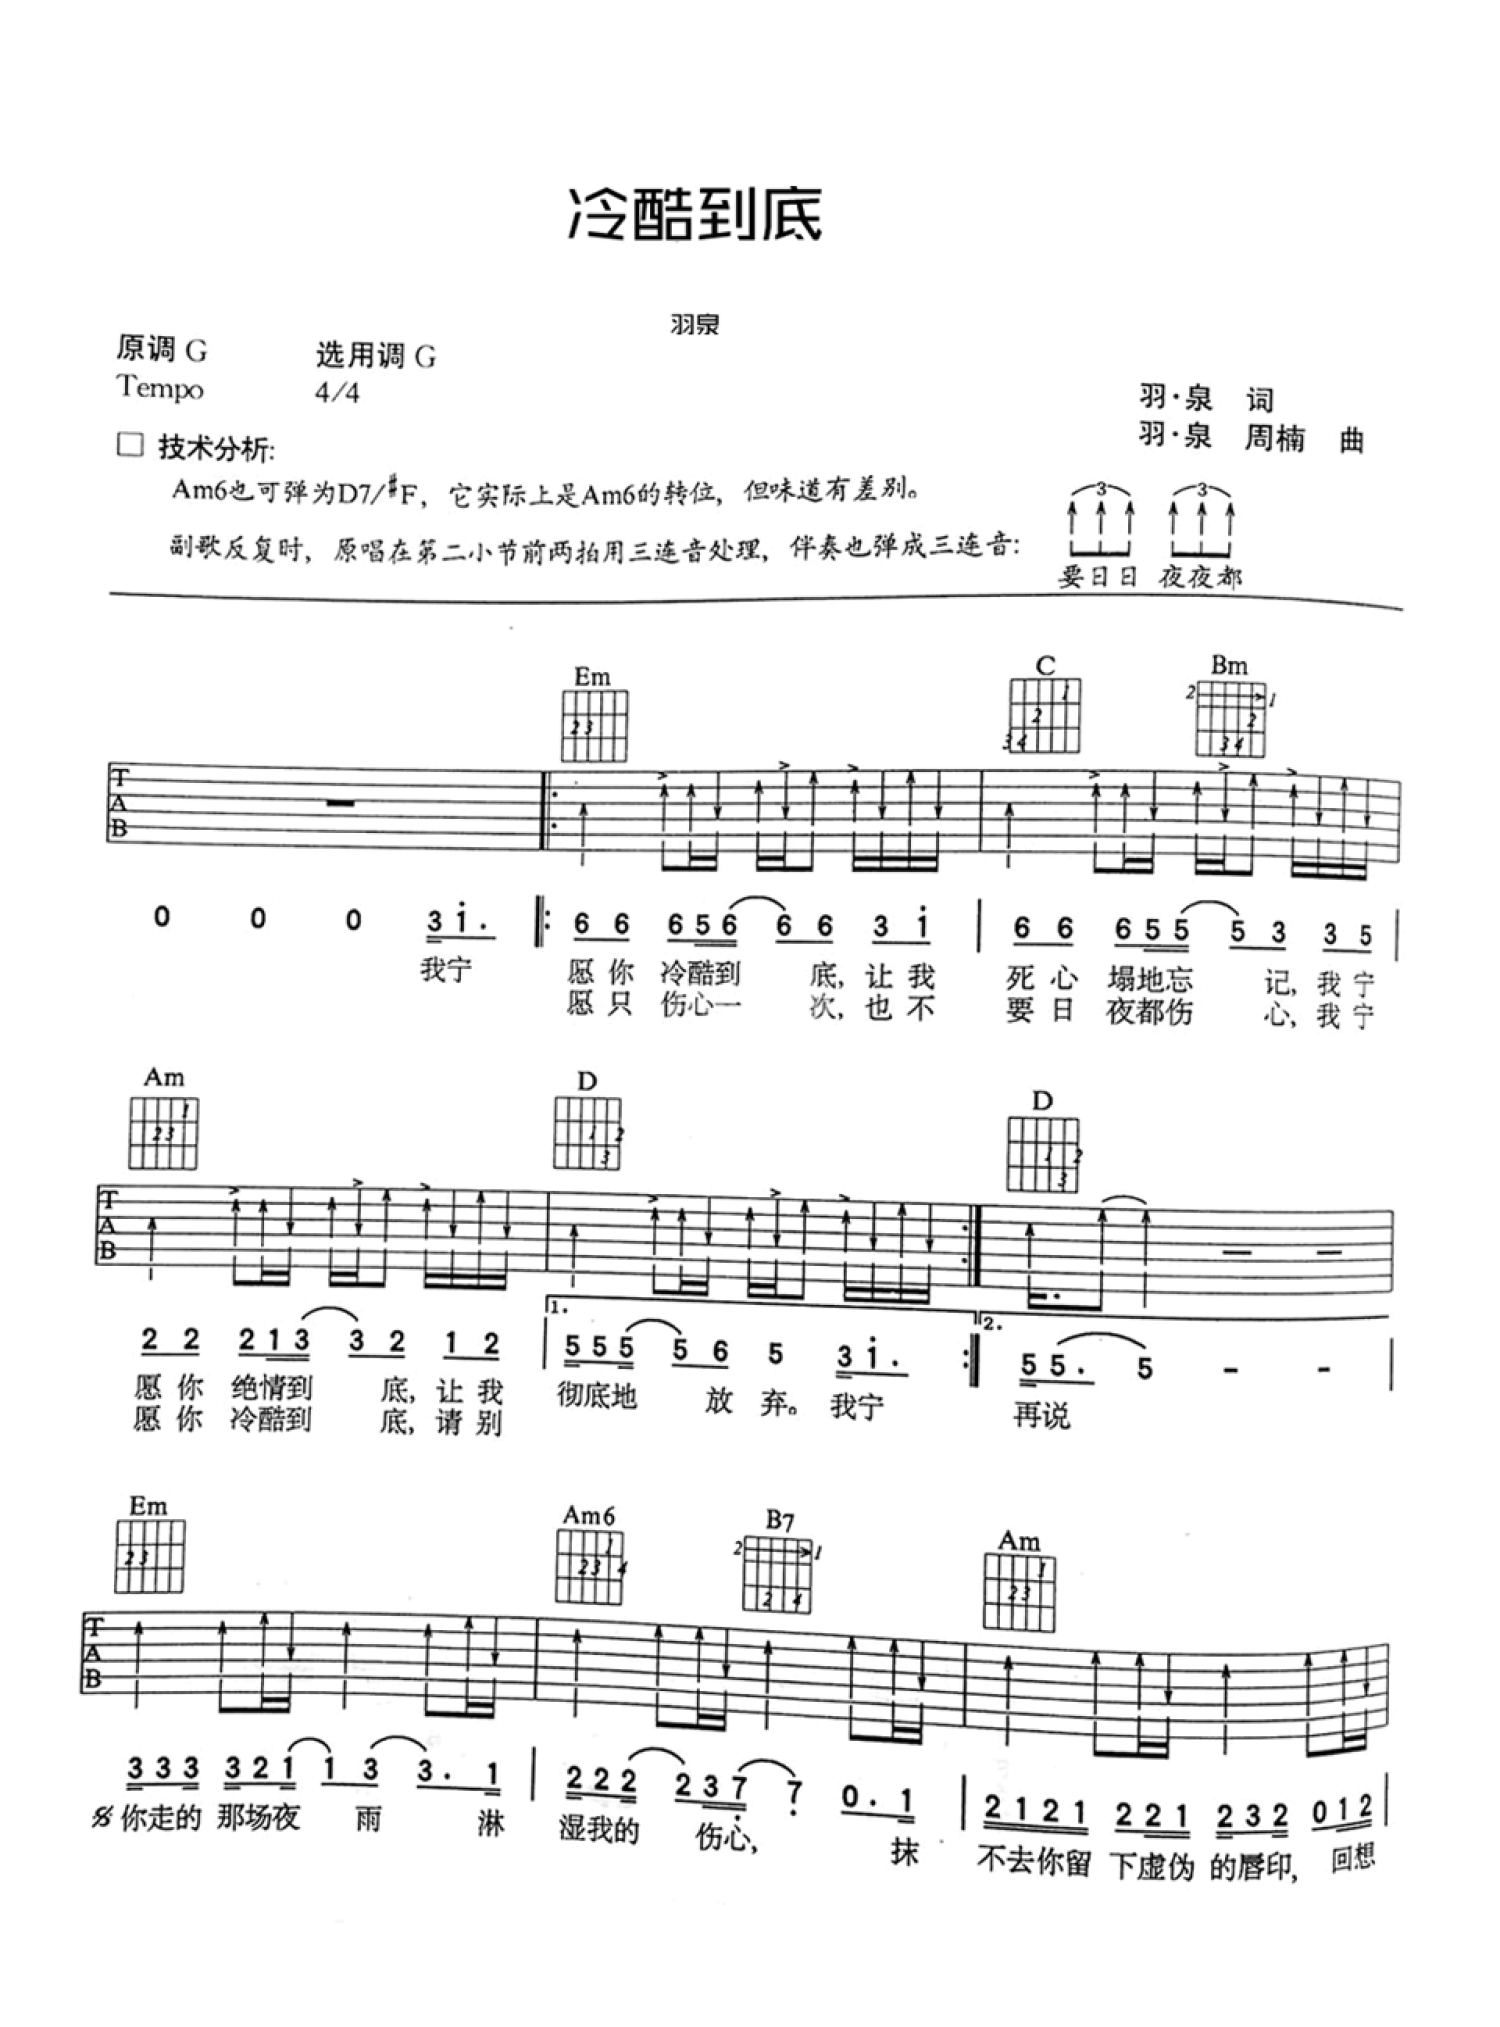 简单版《飞蛾》钢琴谱 - 羽泉0基础钢琴简谱 - 高清谱子图片 - 钢琴简谱